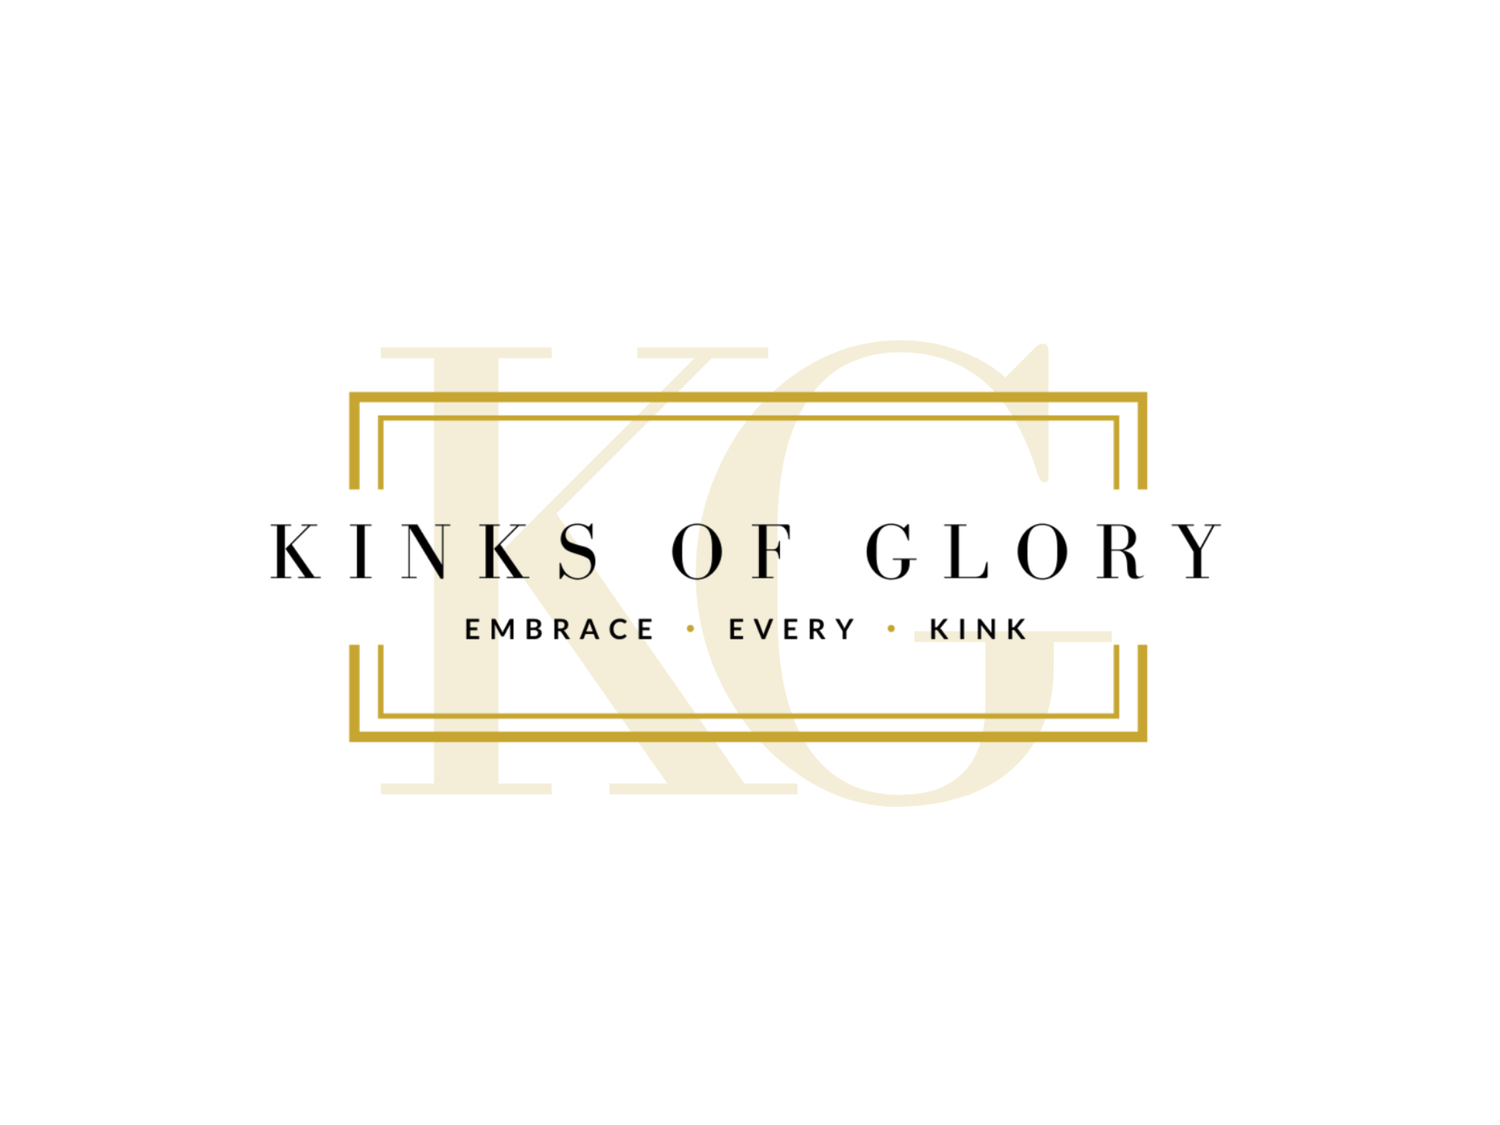 The Kinks of Glory